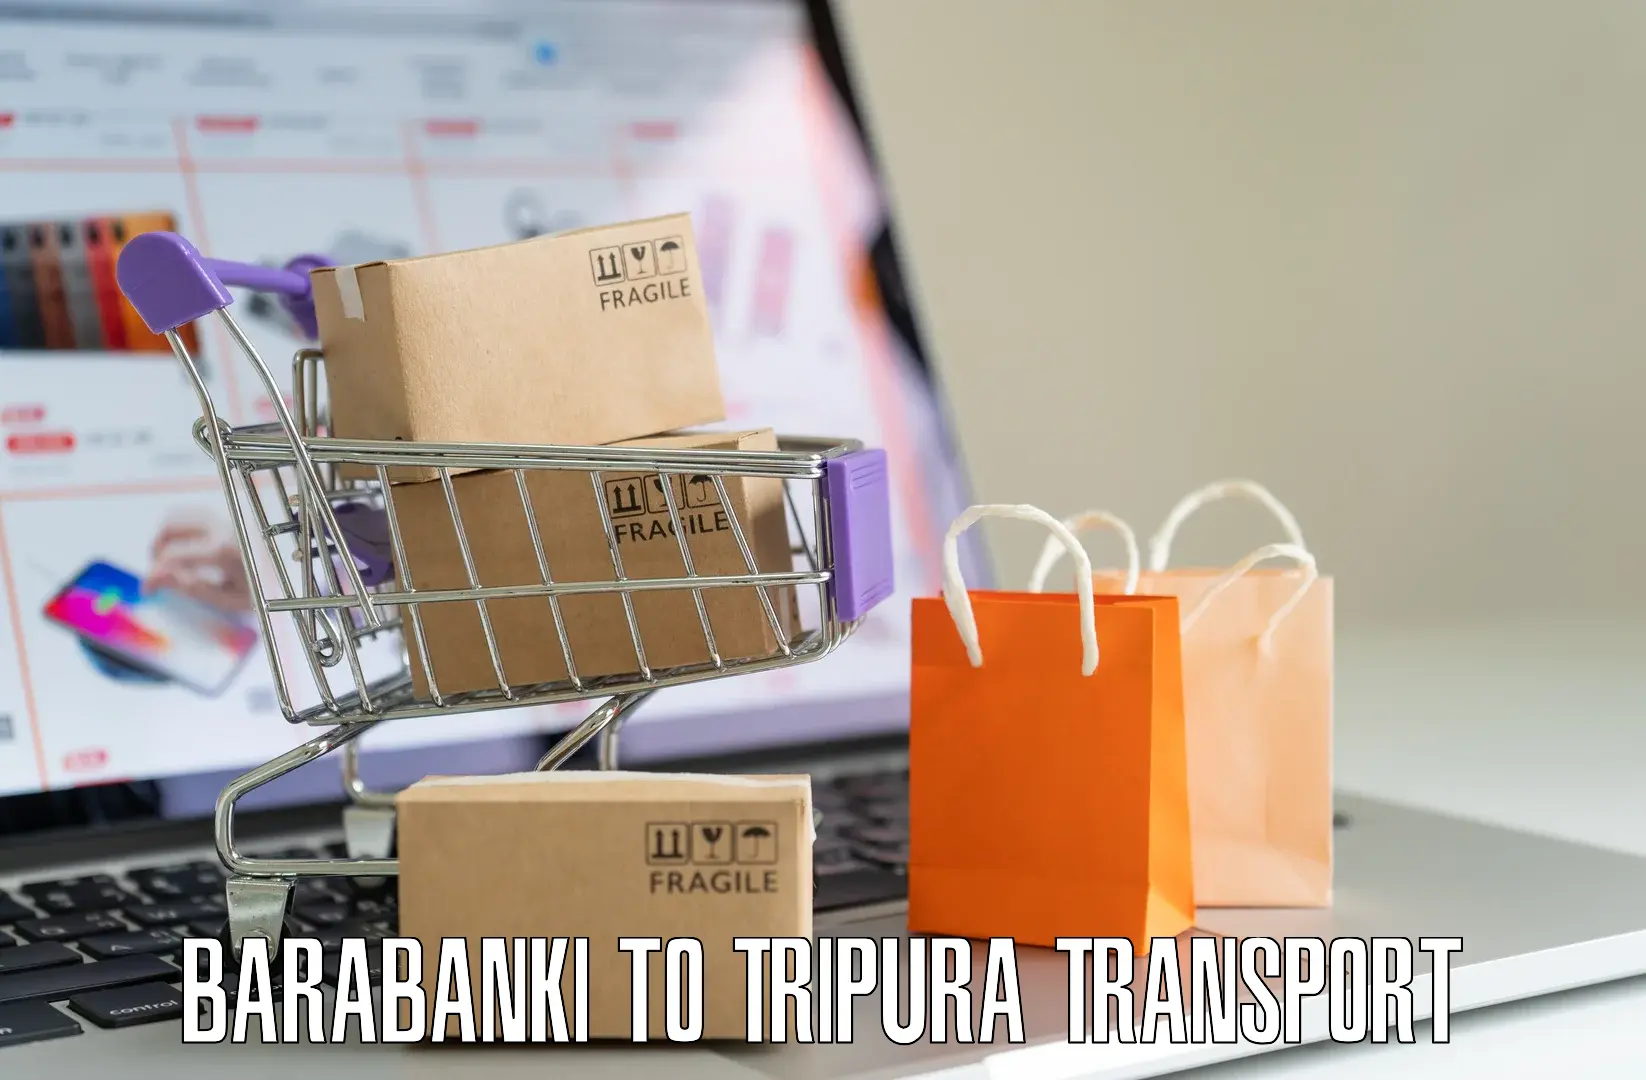 Pick up transport service Barabanki to IIIT Agartala